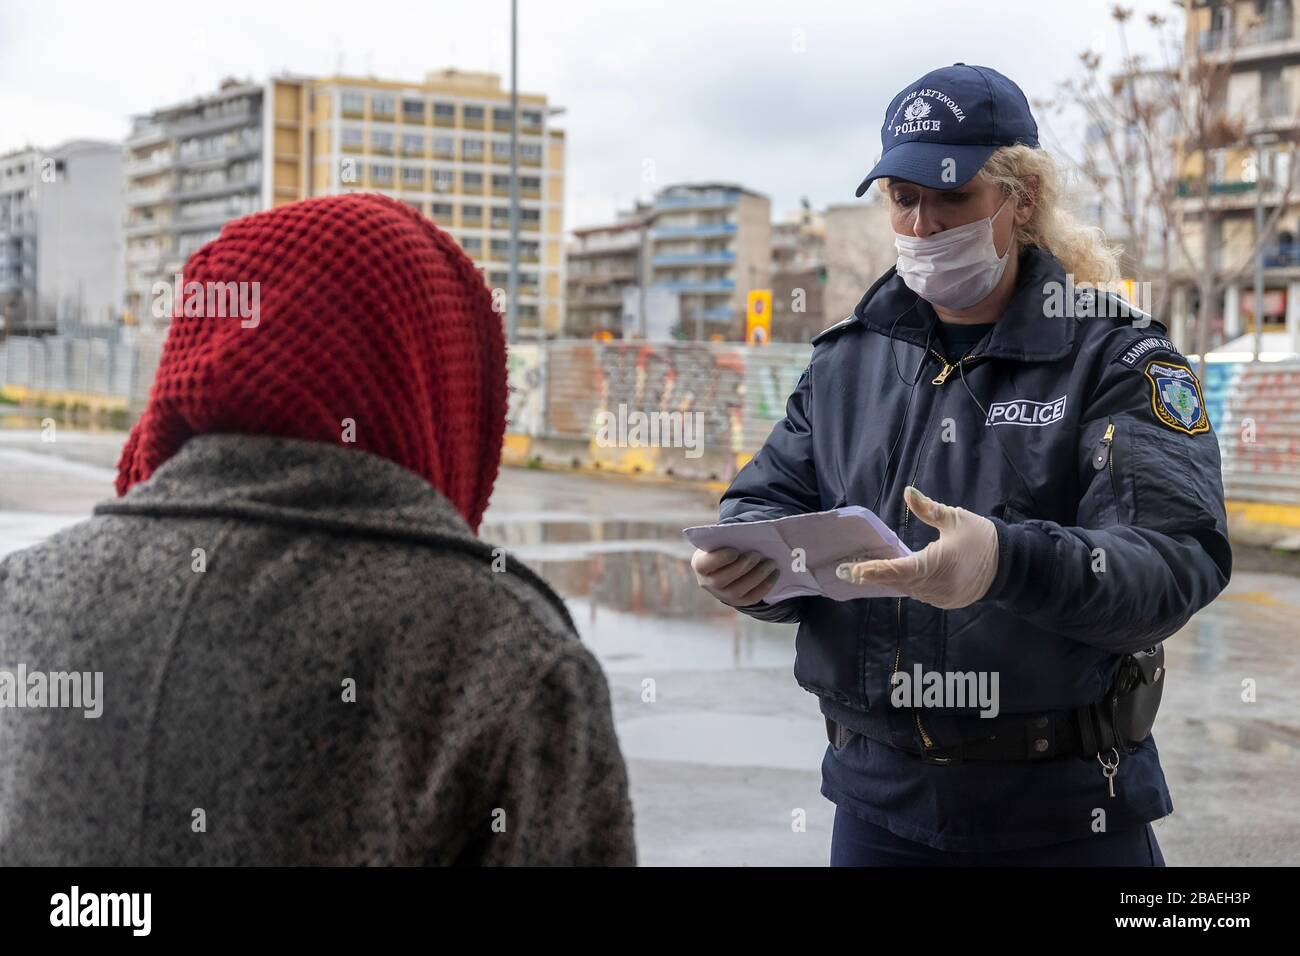 Tesalónica, Grecia - 23 de marzo de 2020: Un oficial de policía revisa los documentos de un ciudadano, mientras el país lucha por controlar la propagación del COVID Foto de stock